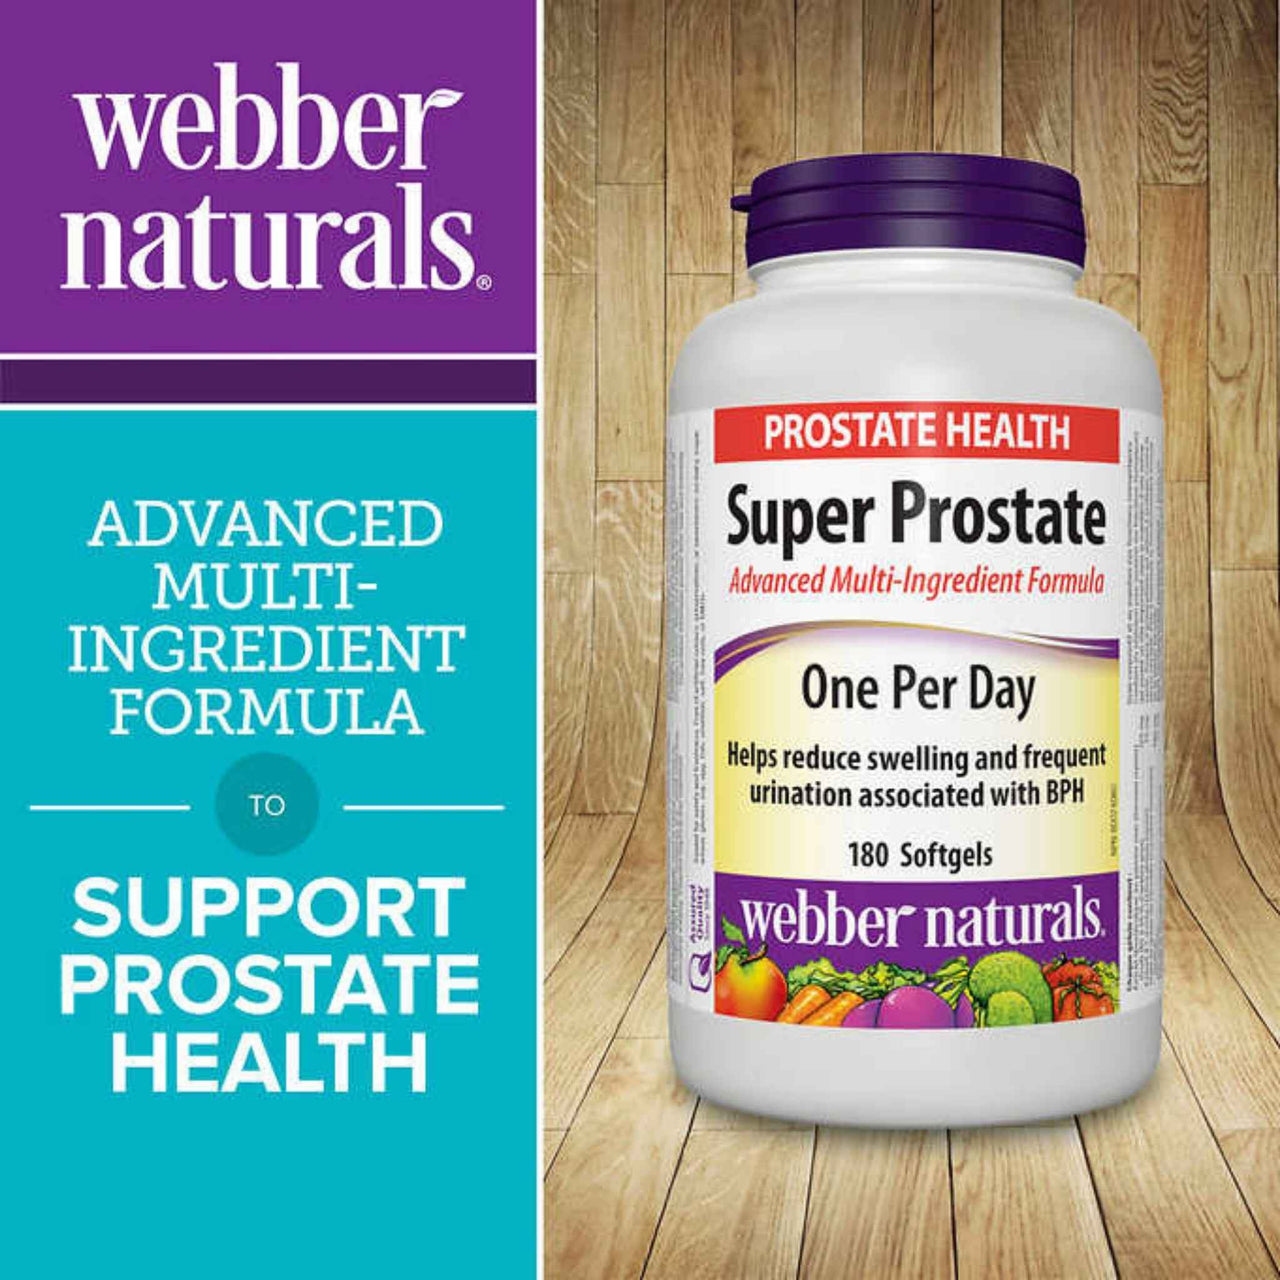 Image of Webber Naturals Super Prostate Advanced Multi-Ingredient Formula, 180 softgels